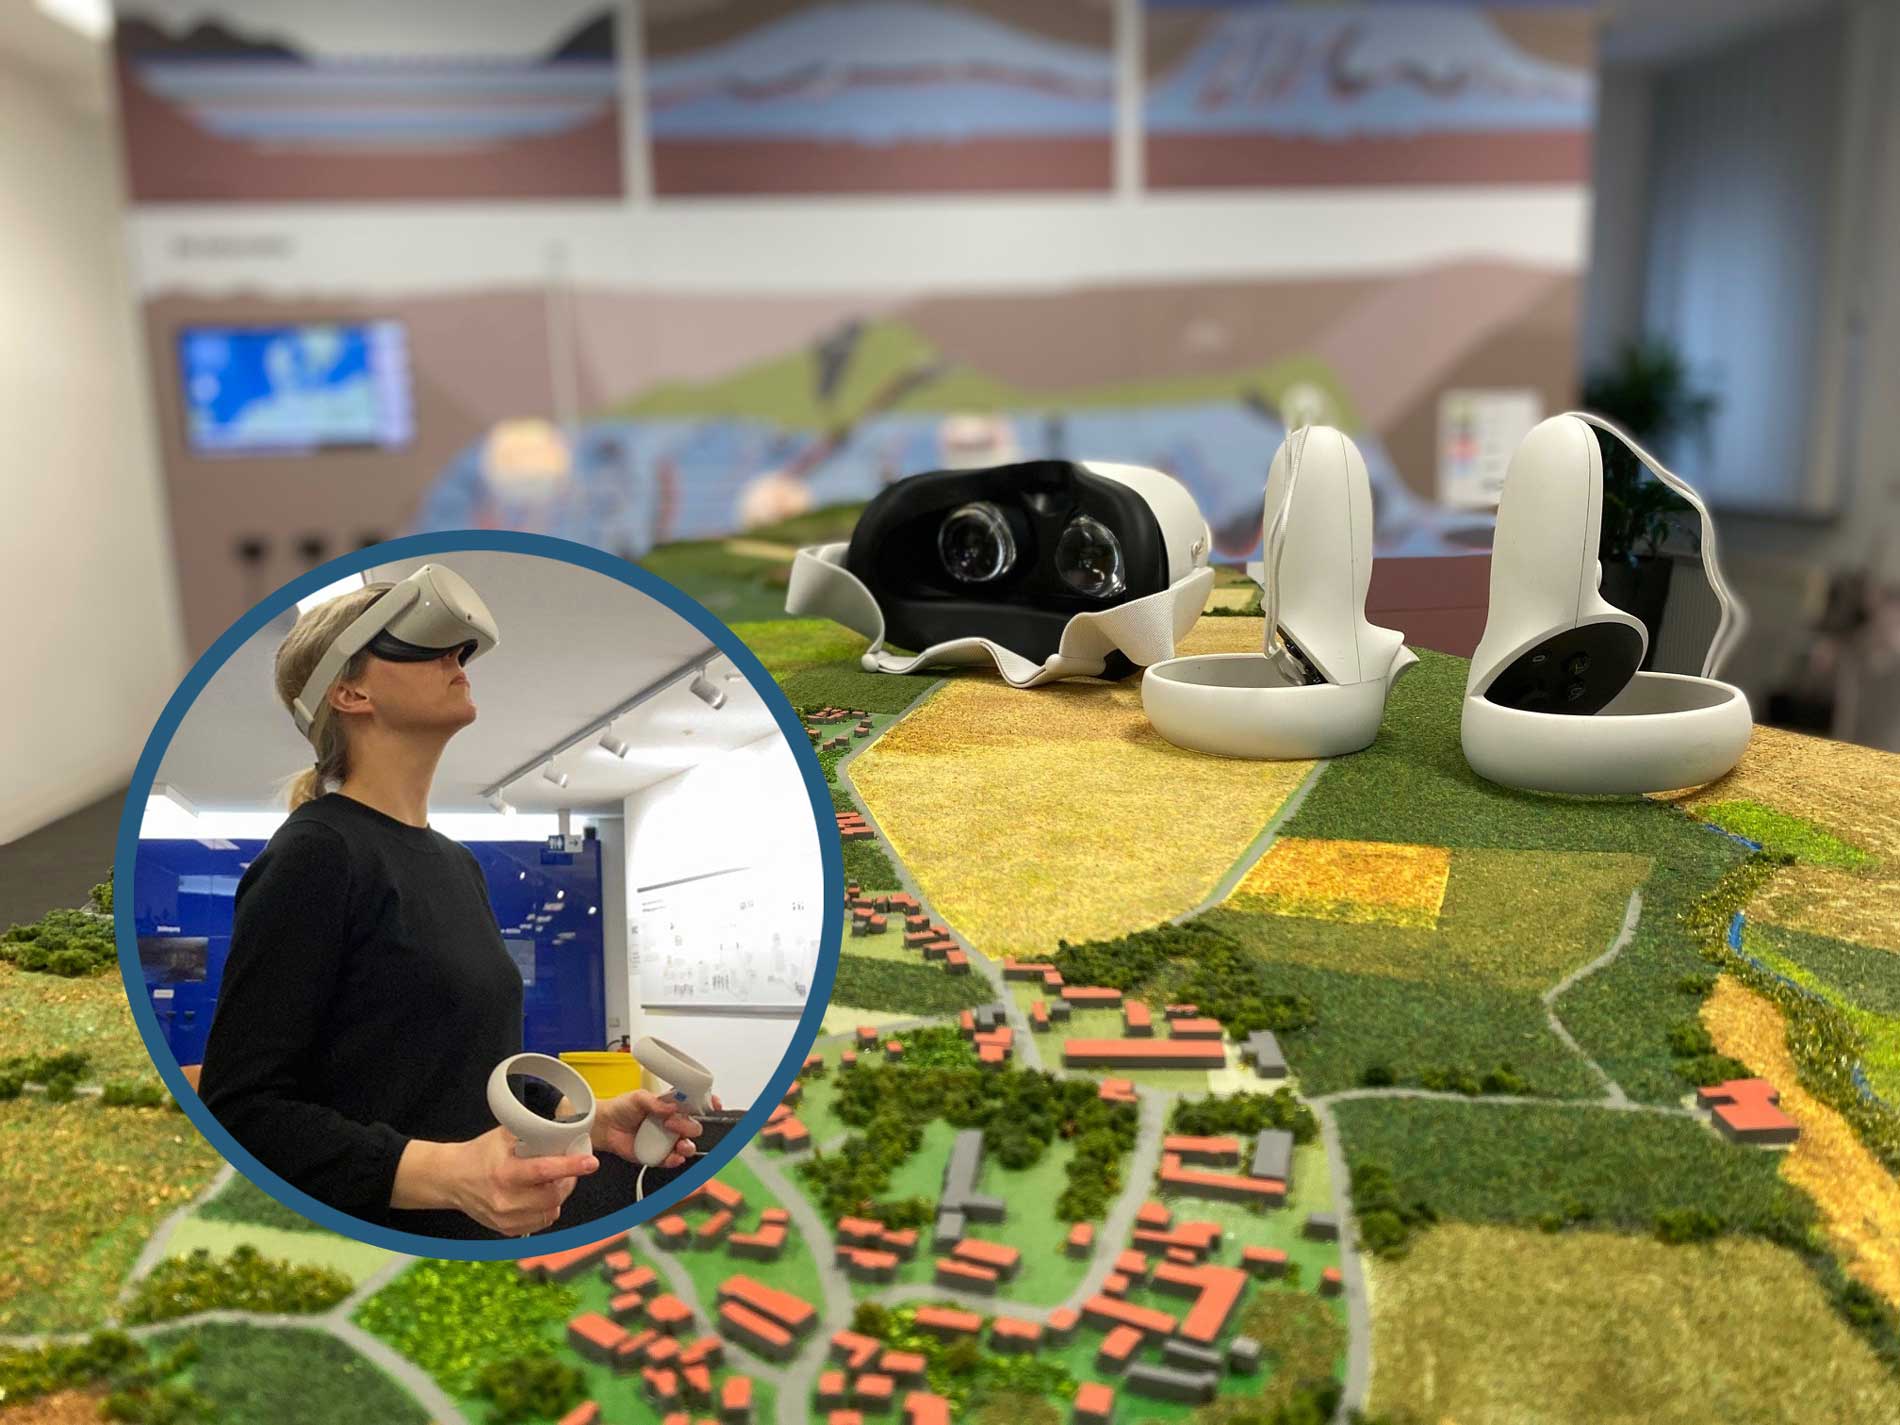 Collage: Auf einem 3D-Modell liegen VR-Brillen, in einem kleinen Bildausschnitt ist eine Frau zu sehen, die eine VR-Brille trägt